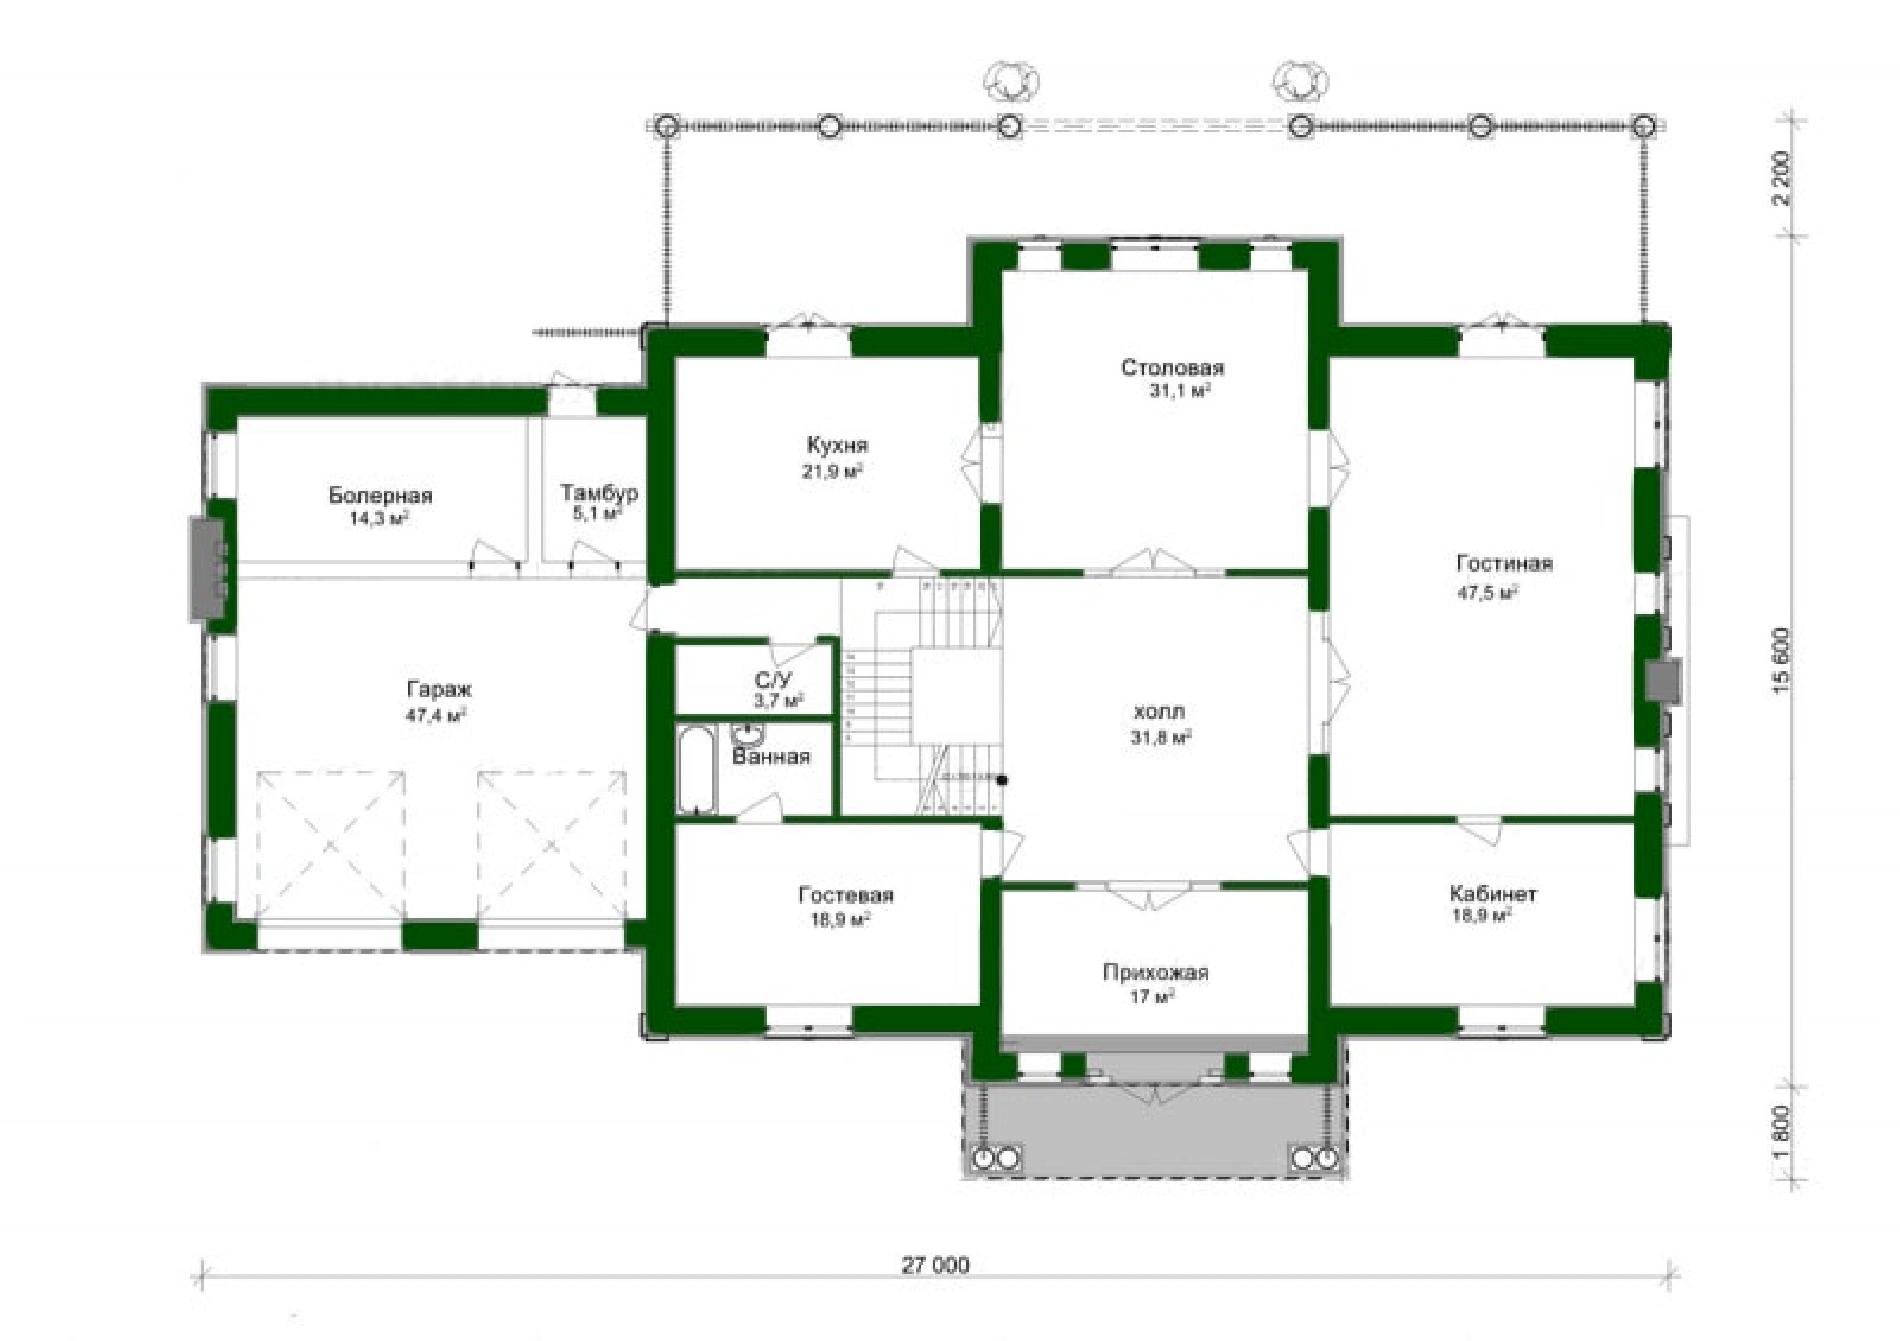 Планировка проекта дома №ml-564 ml-564_p1-min.jpg